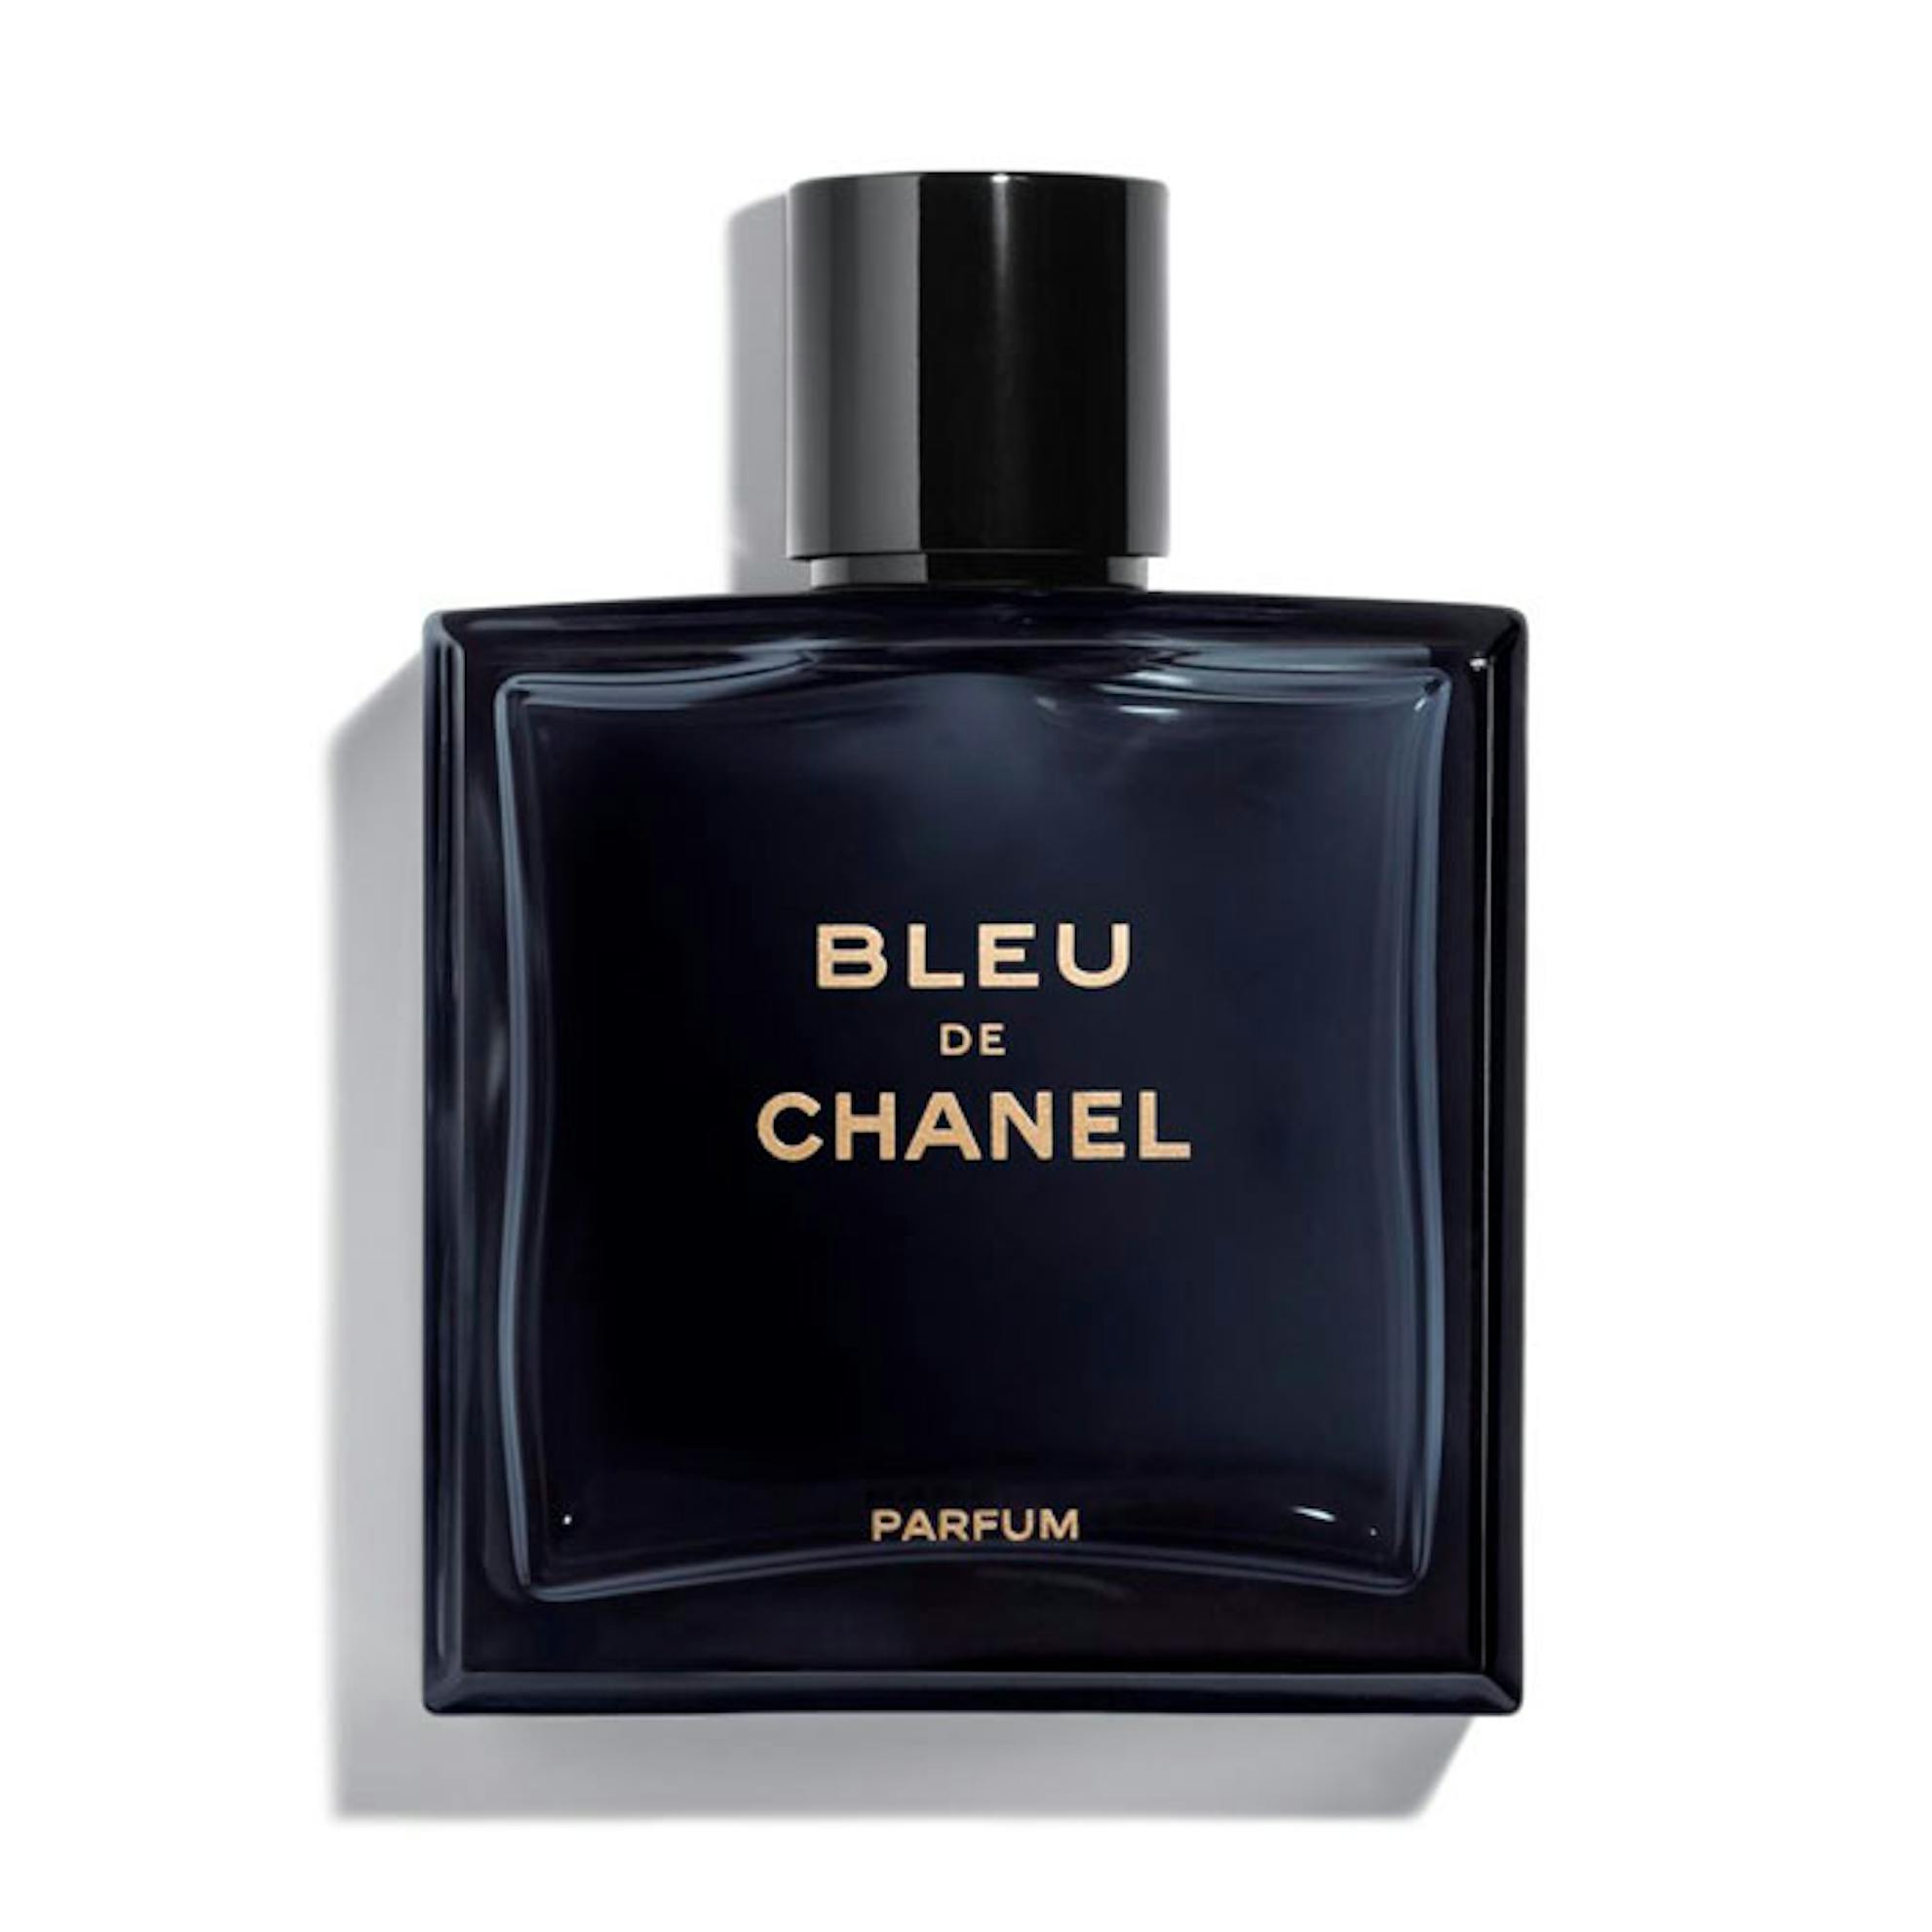 Buy Chanel Bundle Offer Bleu De Chanel EDT 50ML + After Shave